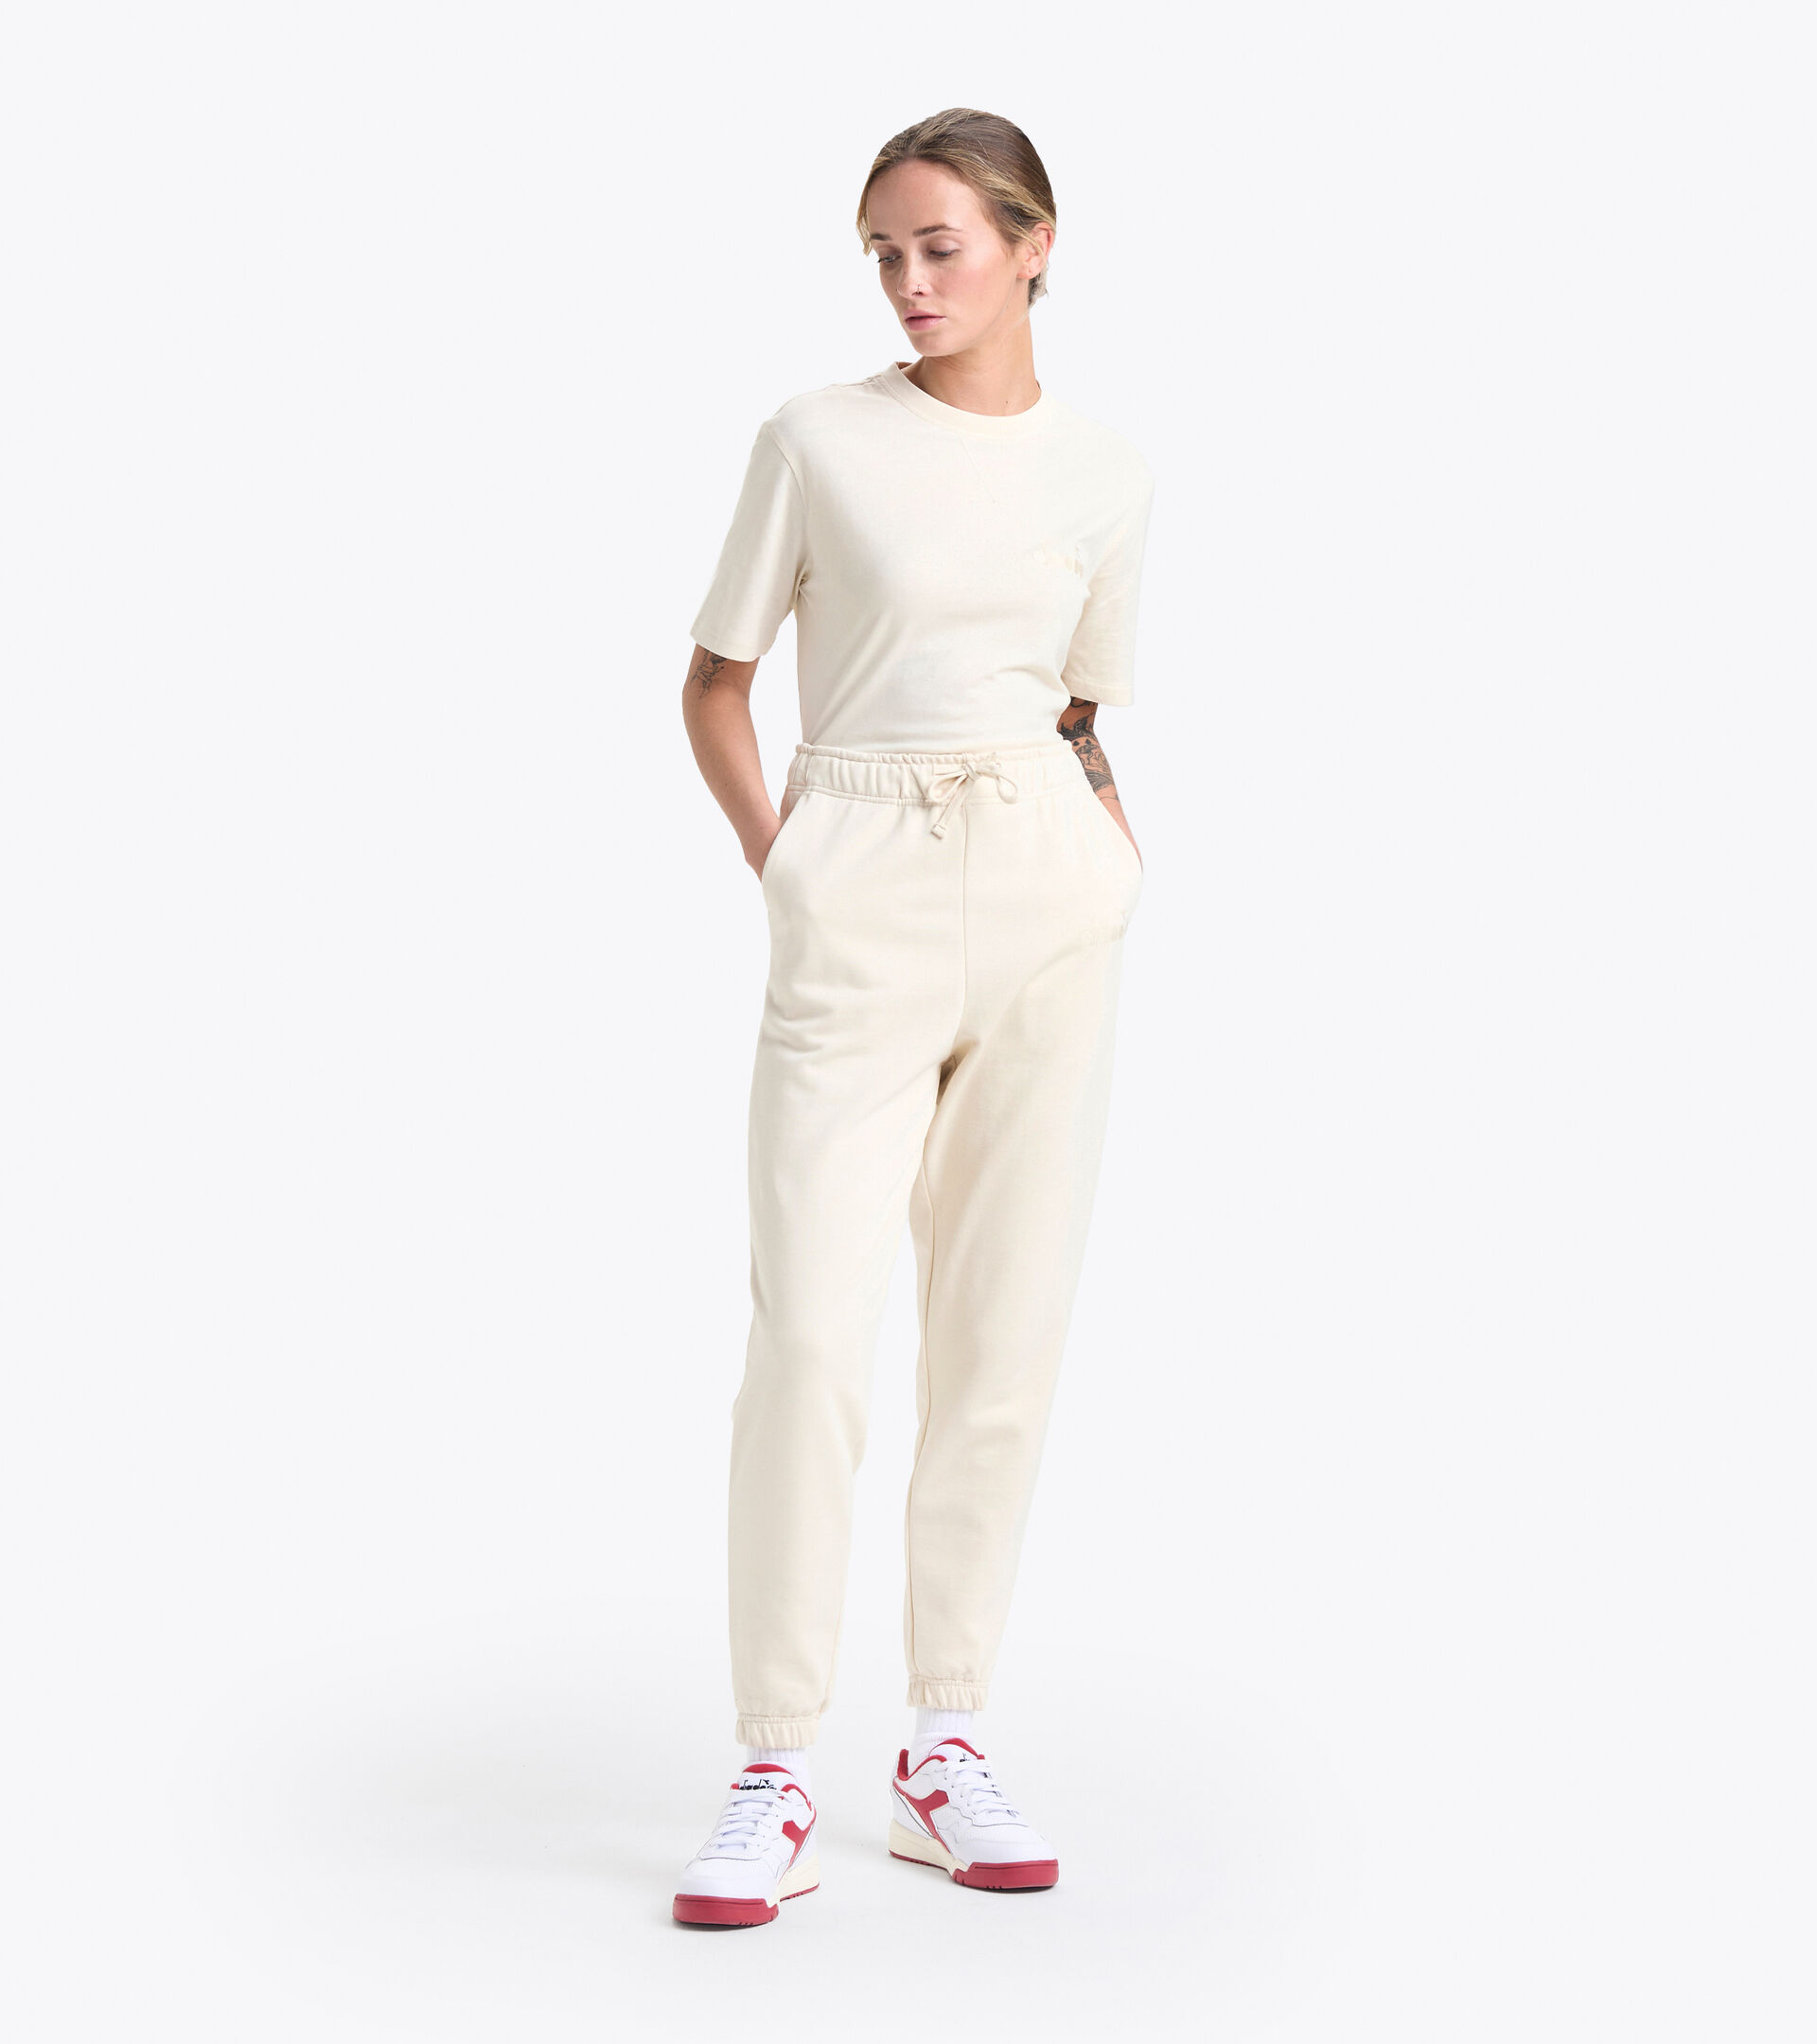 Sporthose aus Baumwolle - Gender neutral PANT SPW LOGO SCHWAN WEISS - Diadora